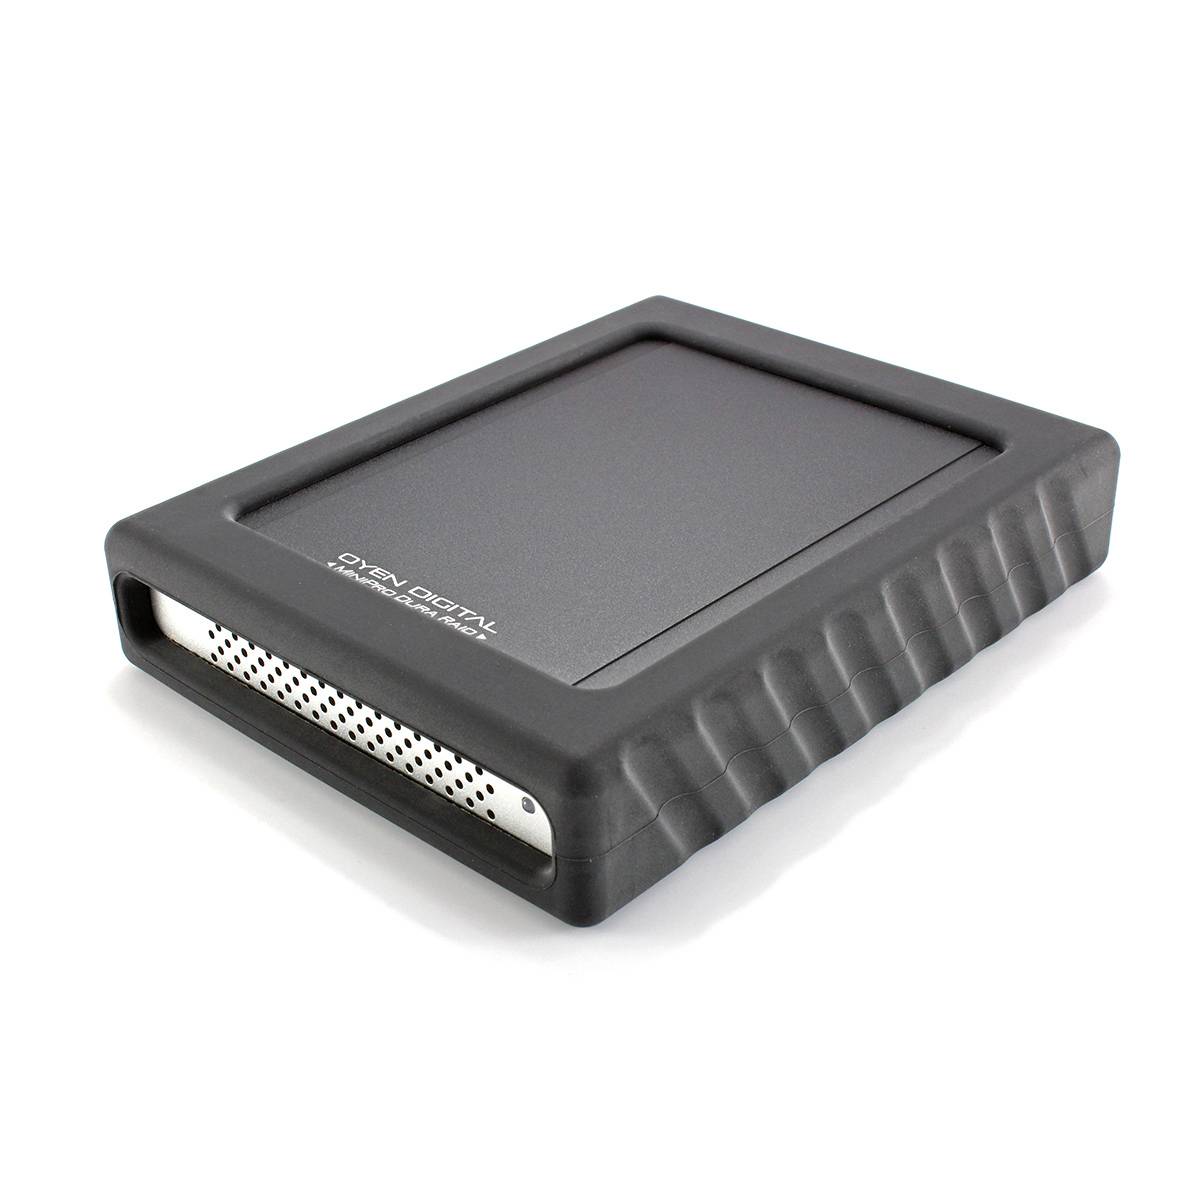 MiniPro Dura RAID SSD